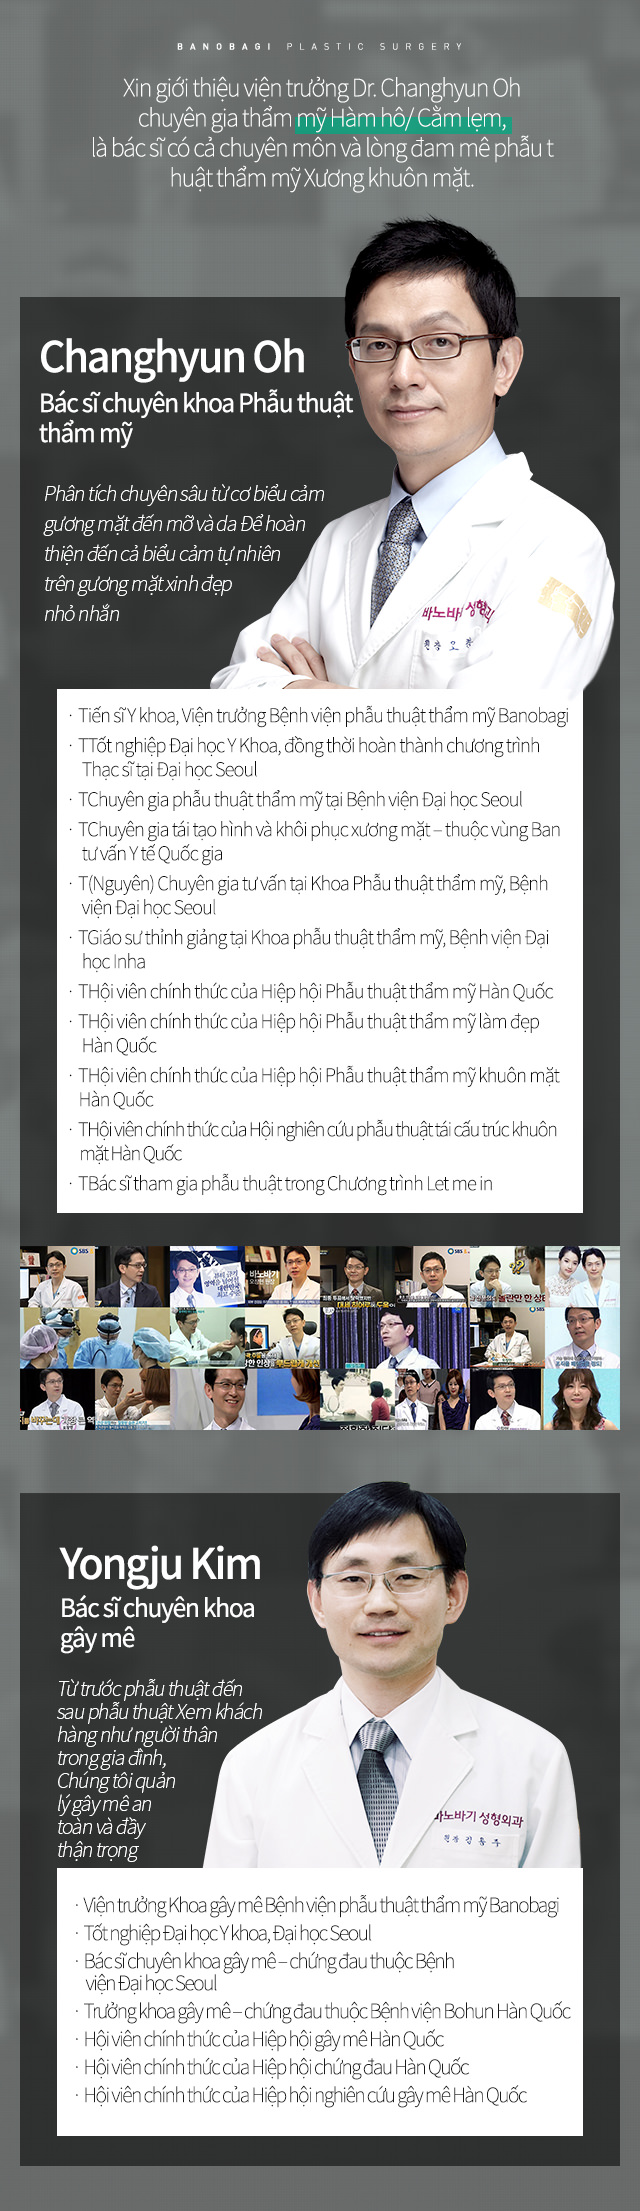 Xin giới thiệu viện trưởng Dr. Jonglim Park chuyên gia thẩm mỹ Hàm hô/ Cằm lẹm, là bác sĩ có cả chuyên môn và lòng đang mê phẫu thuật thẩm mỹ Xương khuôn mặt. Dr. Jonglim Park là con trai của giáo sư trường Đại học Quốc gia Seoul ParkChulKyu, người có tầm ảnh hưởng nhất trong phẫu thuật Xương hàm mặt Hàn quốc.